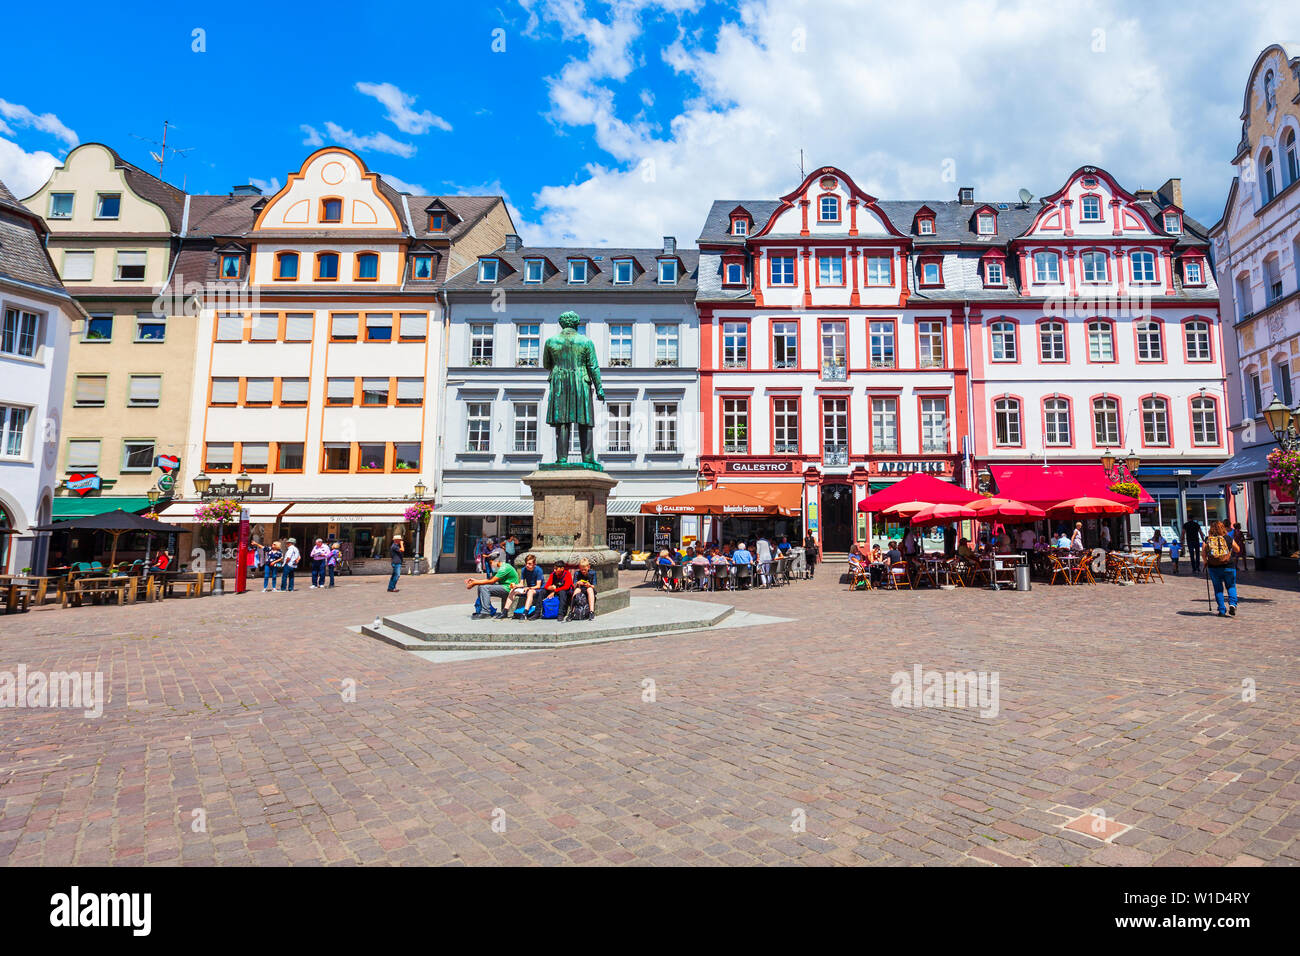 KOBLENZ, GERMANY - JUNE 27, 2018: Jesuit square or jesuitenplatz in Koblenz old town in Germany Stock Photo